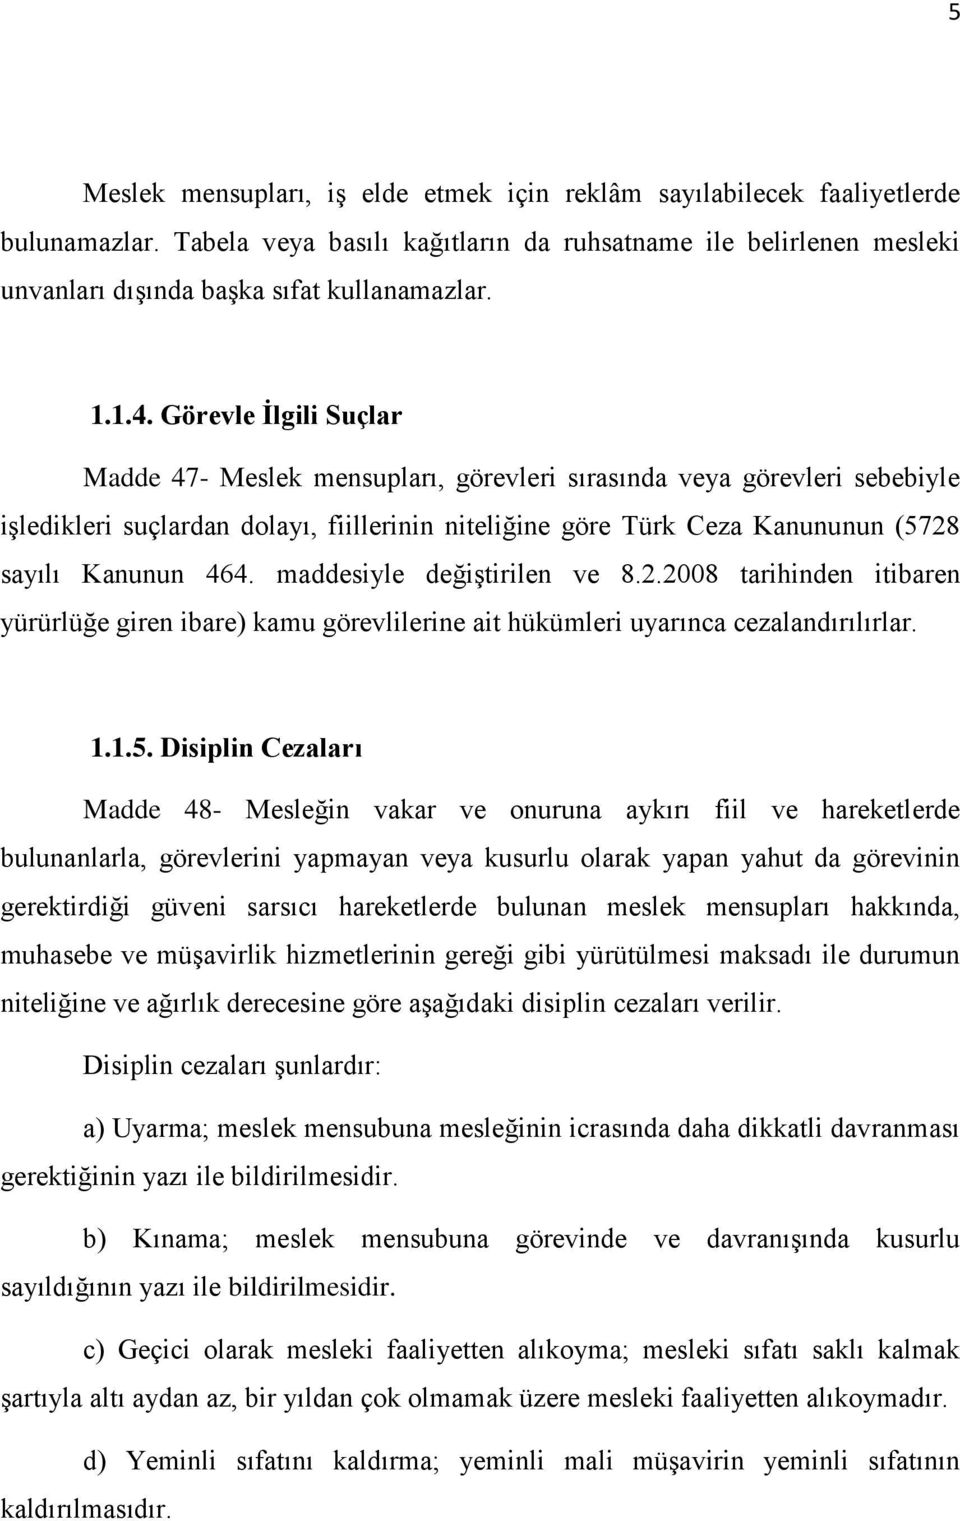 Görevle İlgili Suçlar Madde 47- Meslek mensupları, görevleri sırasında veya görevleri sebebiyle işledikleri suçlardan dolayı, fiillerinin niteliğine göre Türk Ceza Kanununun (5728 sayılı Kanunun 464.